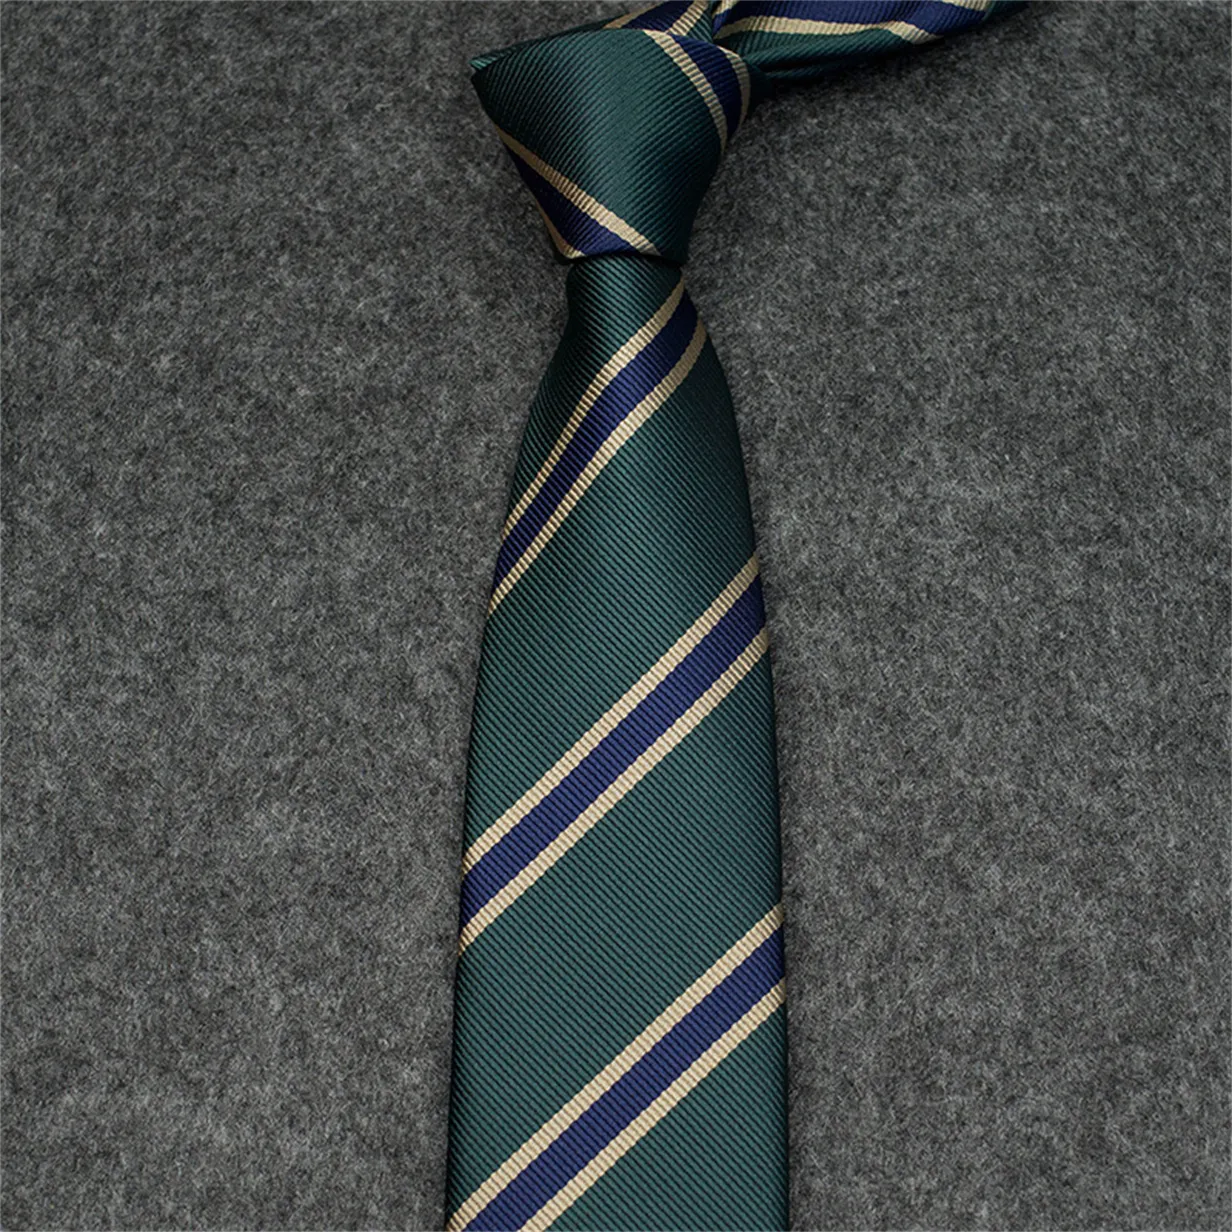 2023 Nouveaux hommes Cravates Mode Cravate en soie 100% Designer Cravate Jacquard Classique Cravate tissée à la main pour hommes Mariage Cravates décontractées et professionnelles avec boîte d'origine 88B